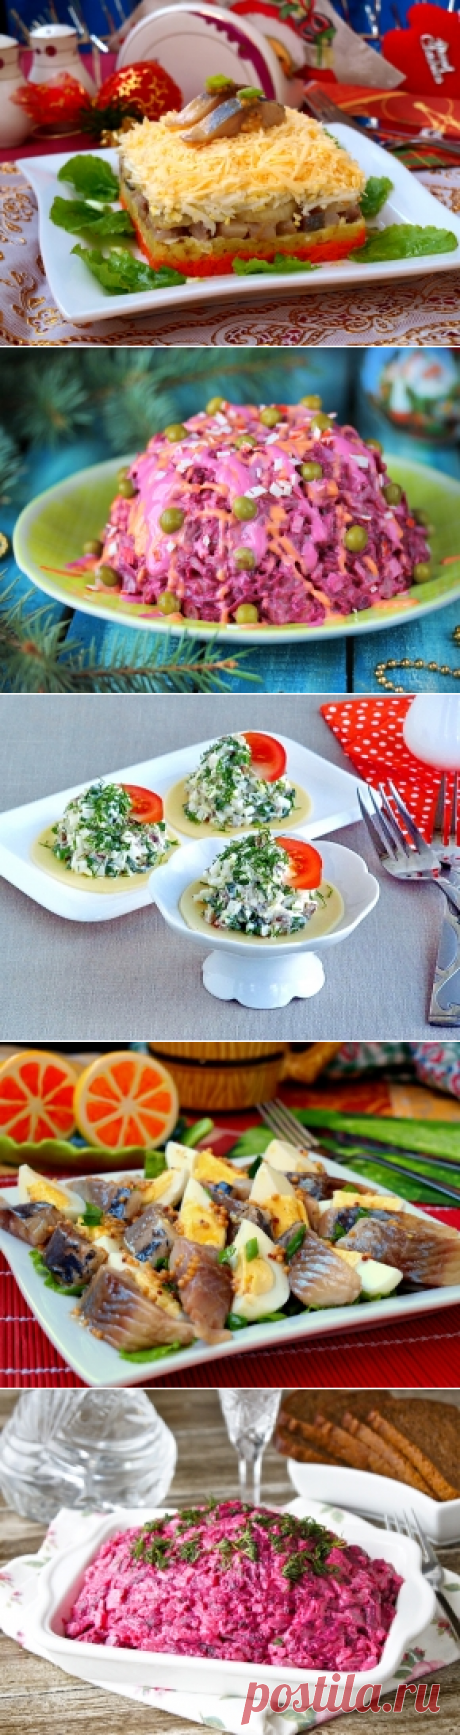 Салаты с селедкой — 30 рецептов с фото пошагово. Как приготовить салат с сельдью?